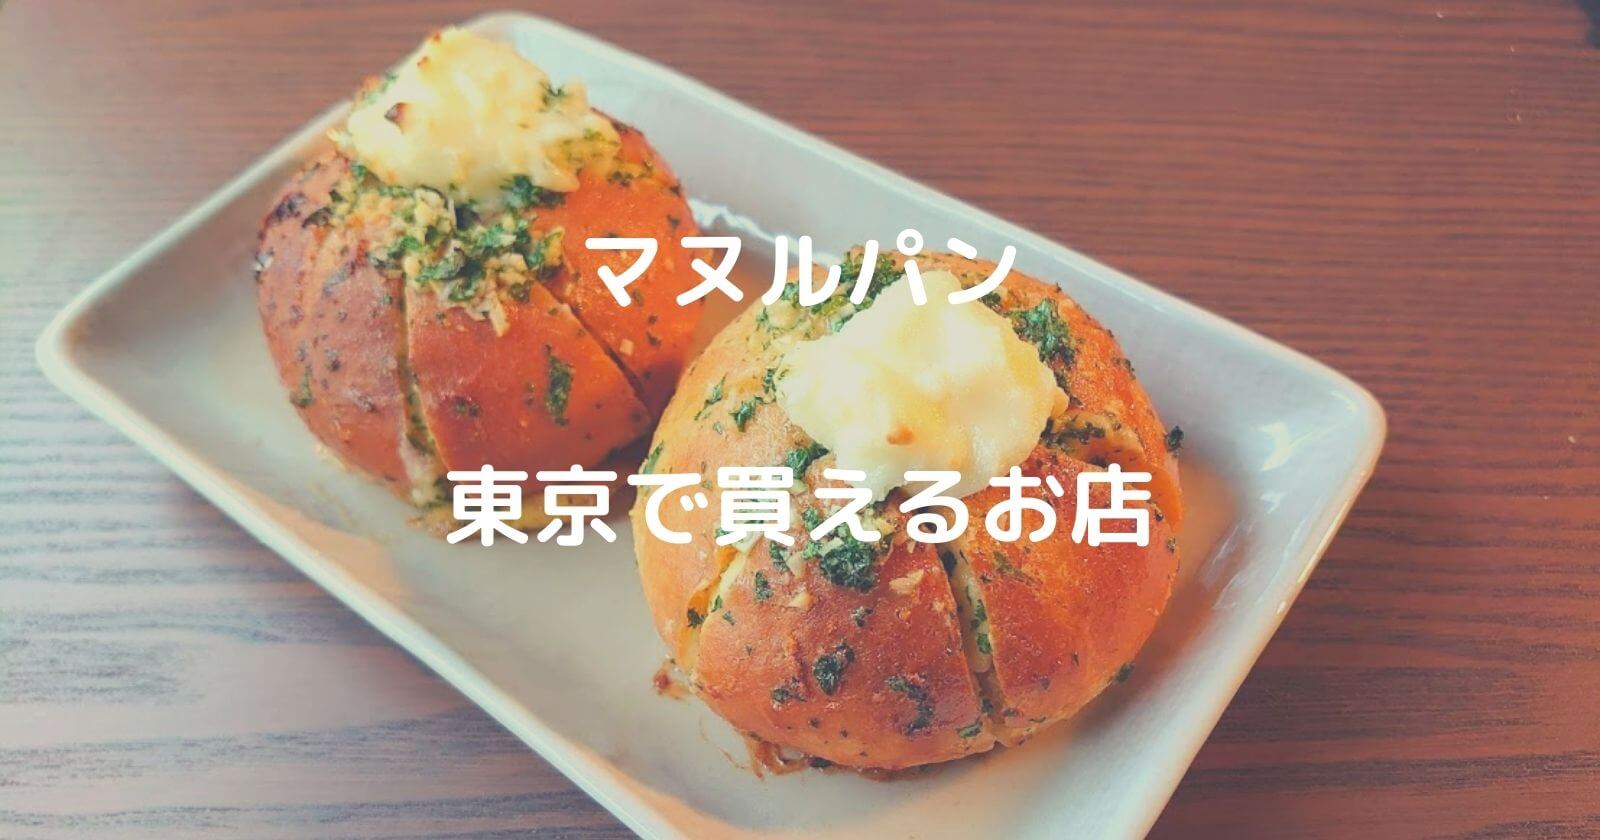 マヌルパン 東京 で買える人気パン屋 お店おすすめ10選をご紹介